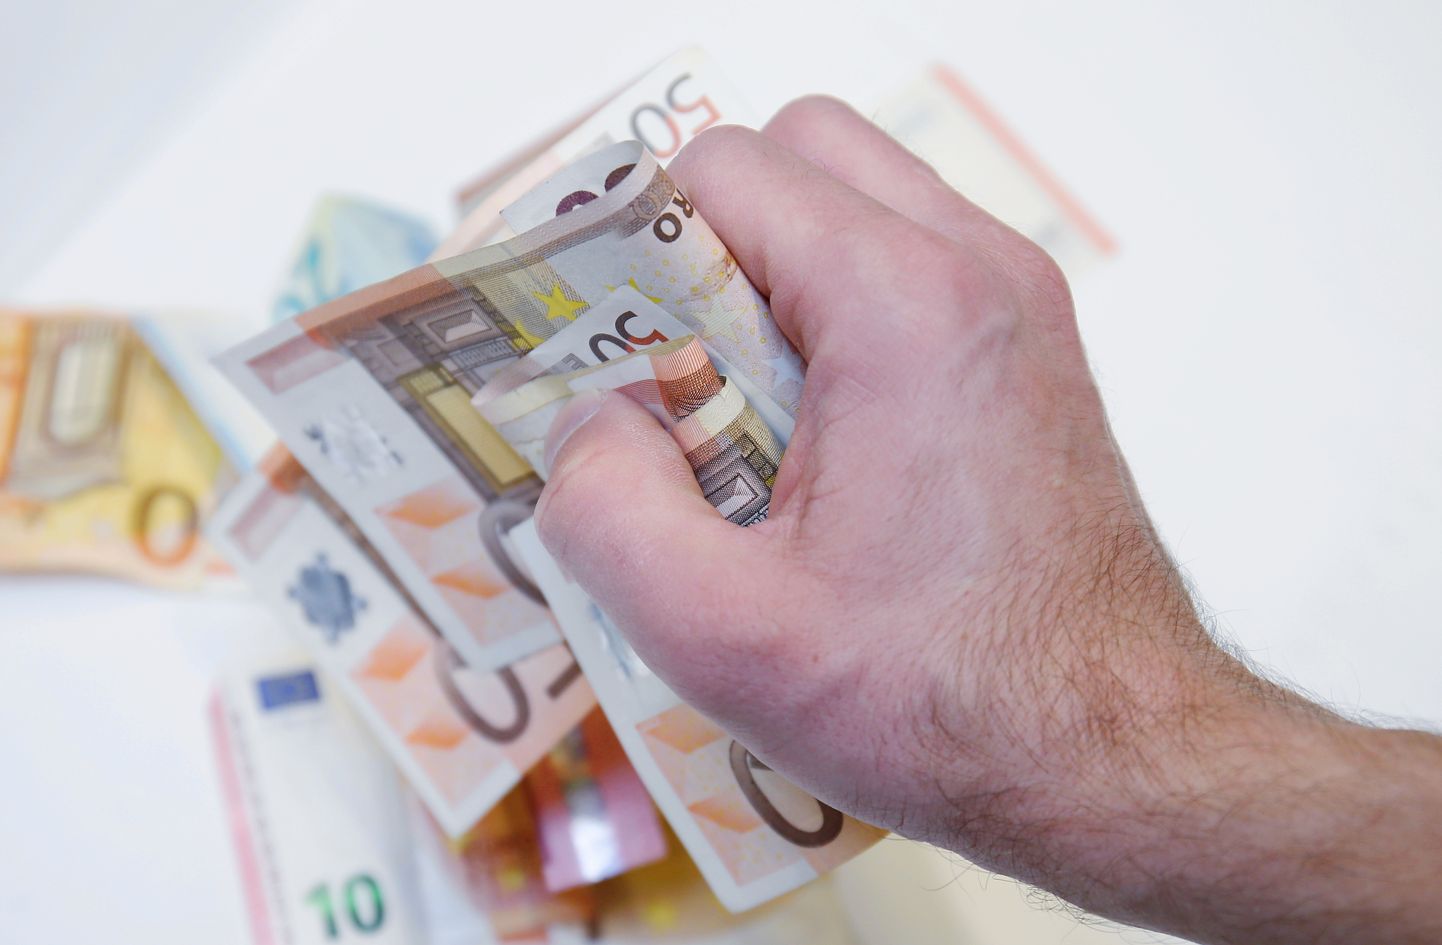 Keskmiselt on vaja 64 000 inimesel maksta täna maksuametlile enam kui 800 eurot. Kellel see võimalik pole, peaks makse ajatama.